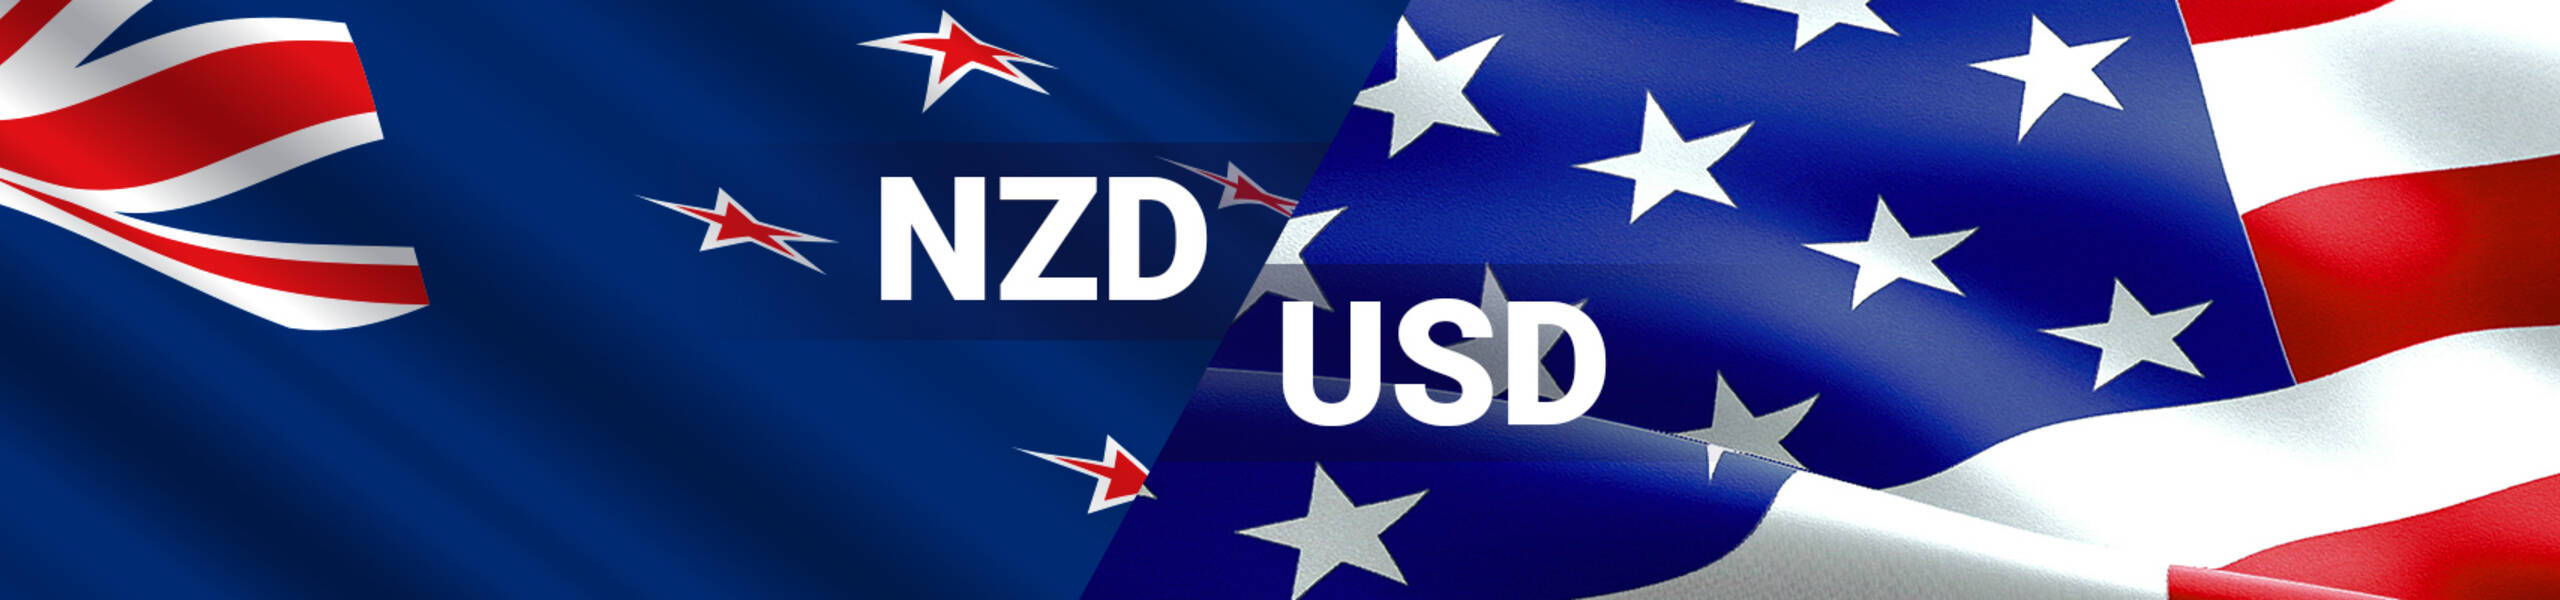 NZD/USD fortaleciendo a los toros en el corto plazo